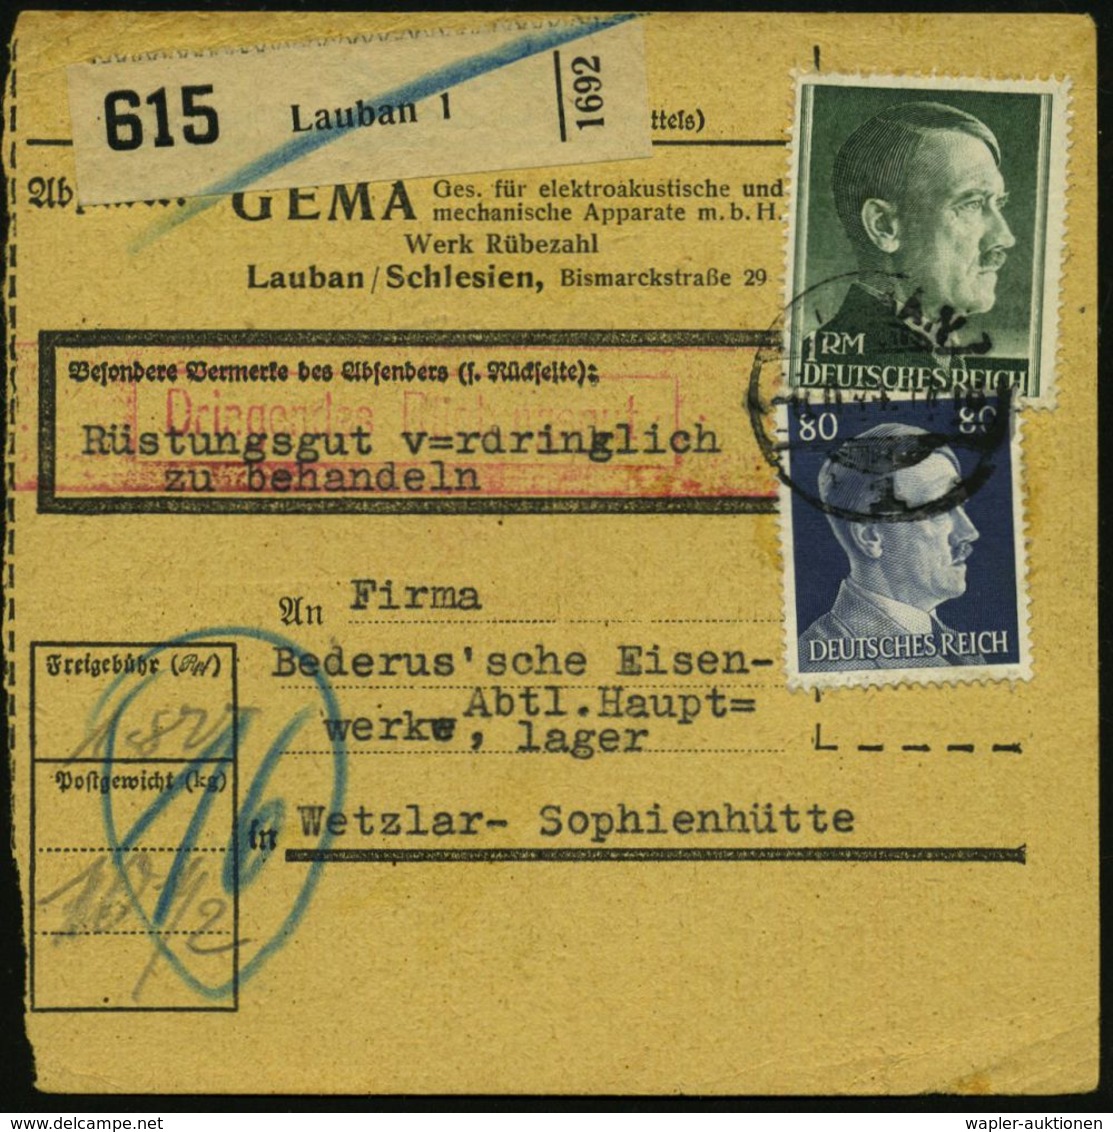 MUSIK ALLGEMEIN : LAUBAN/ 1 1944 (8.11.) 1K-Gitter Auf 180 Pf.-Frankatur Hitler + Schw. Paketzettel: Lauban 1, Selbstbuc - Musica